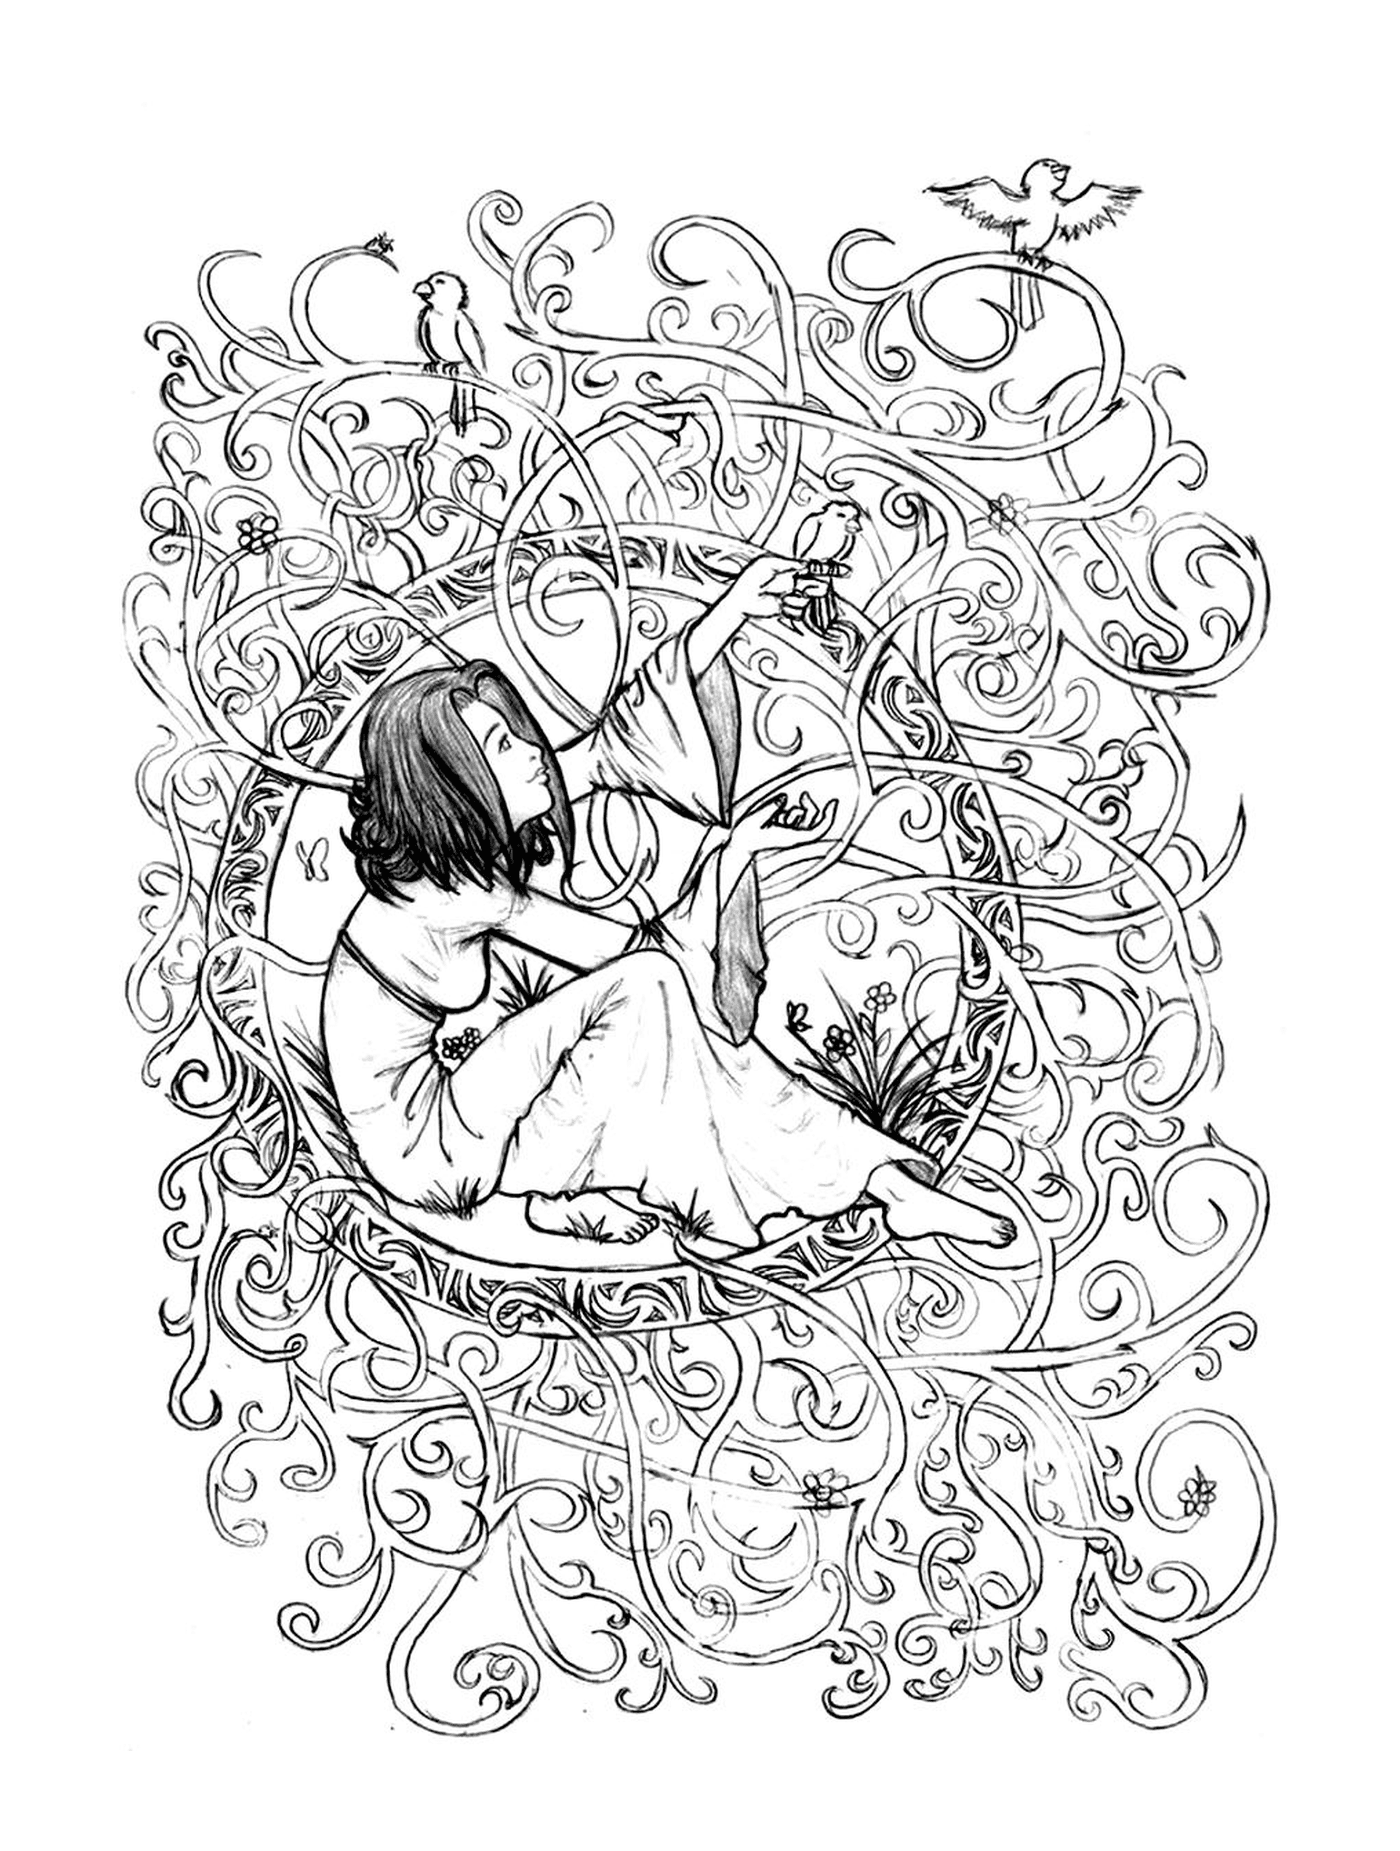  una donna seduta in un cerchio di fiori 